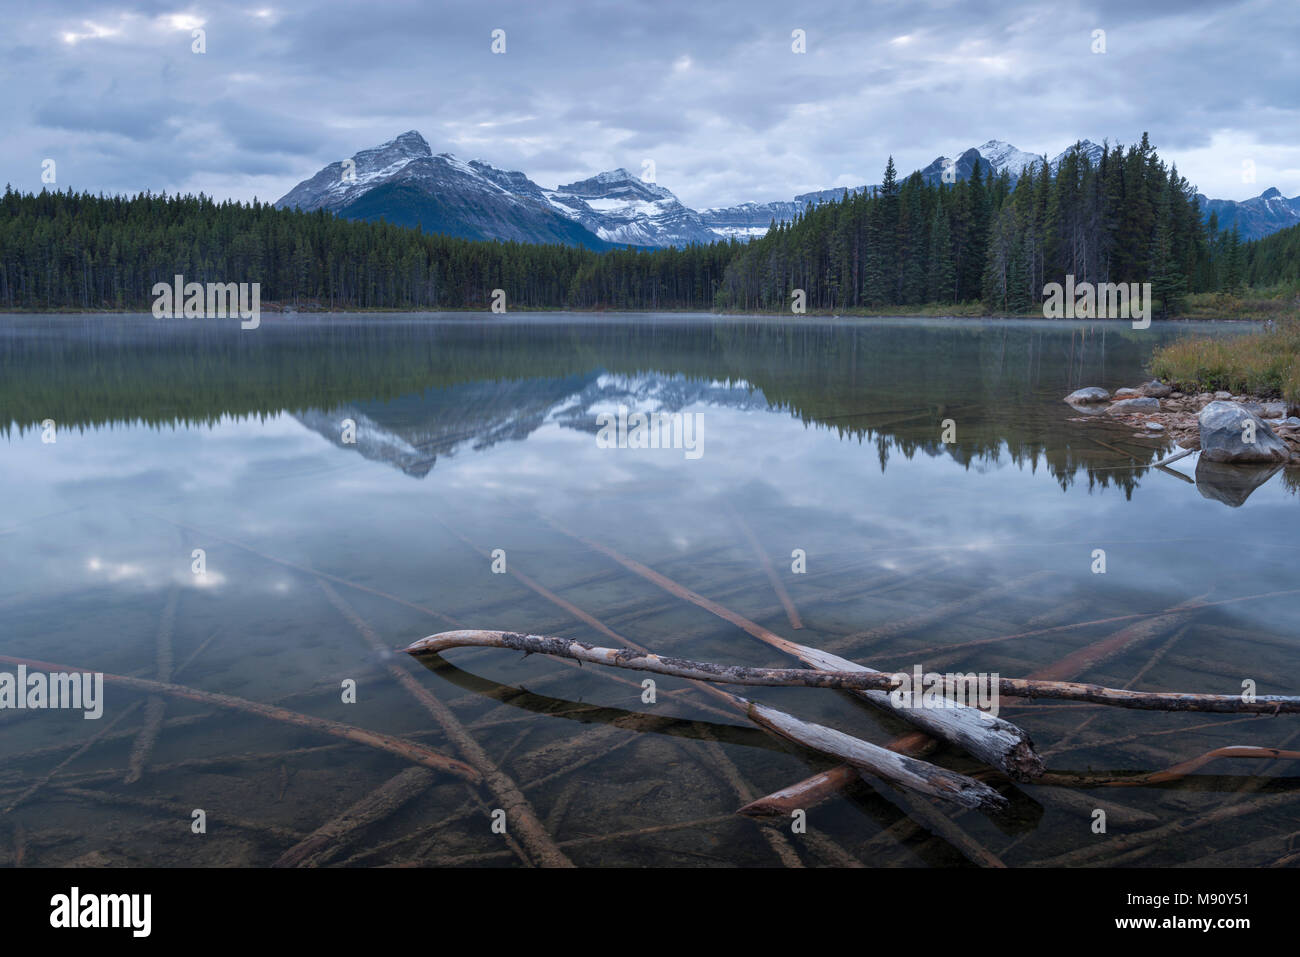 Herbert réfléchissant des Rocheuses canadiennes, le parc national Banff, Alberta, Canada. L'automne (septembre) 2017. Banque D'Images